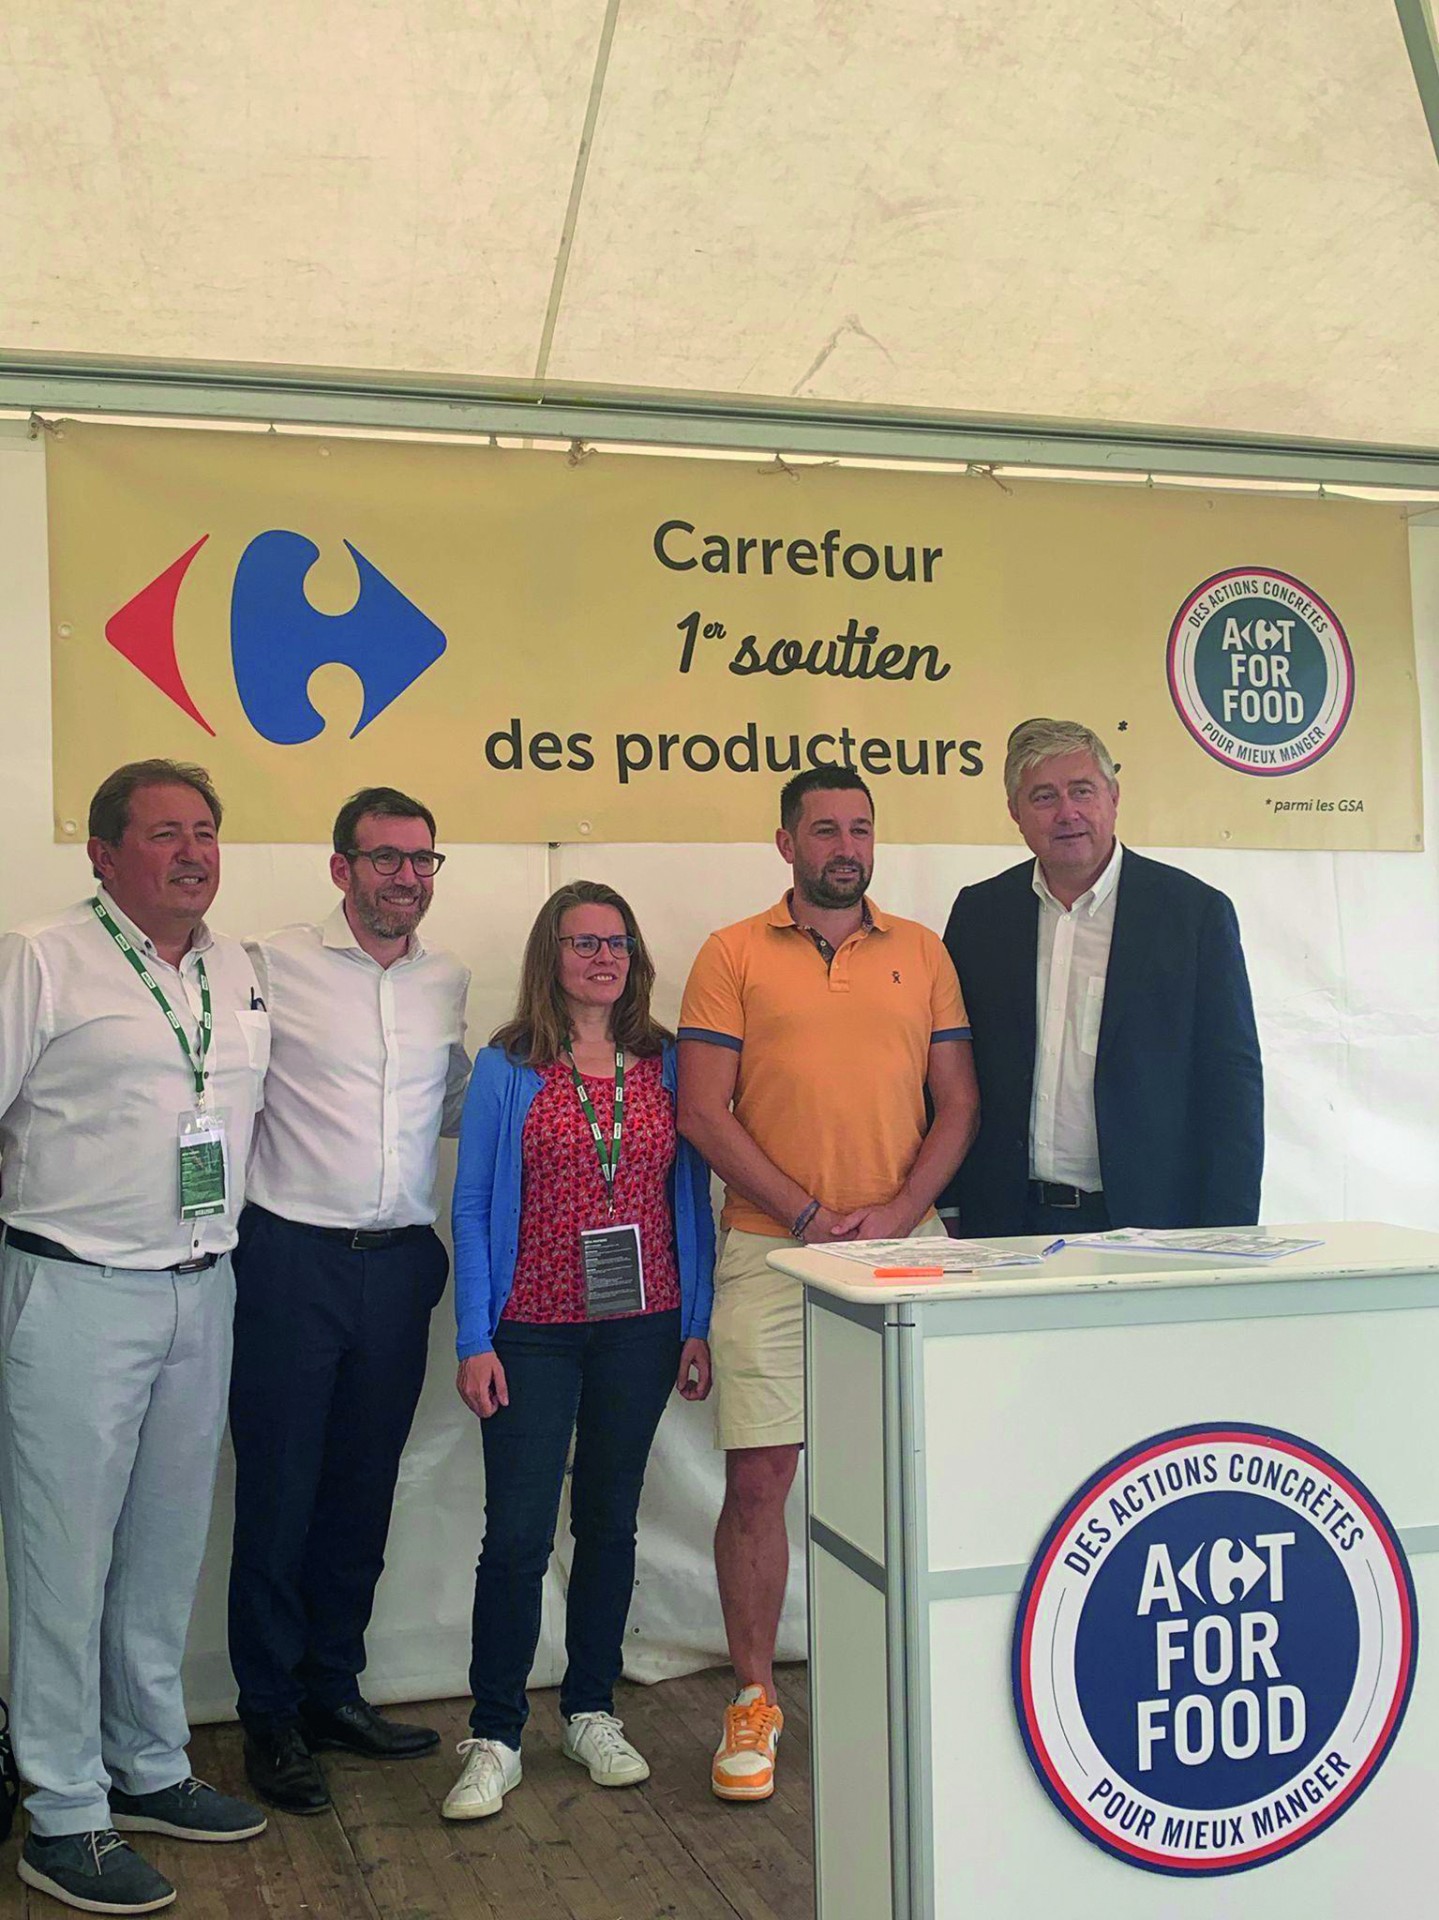 L'enseigne Carrefour réaffirme son soutien au bio français